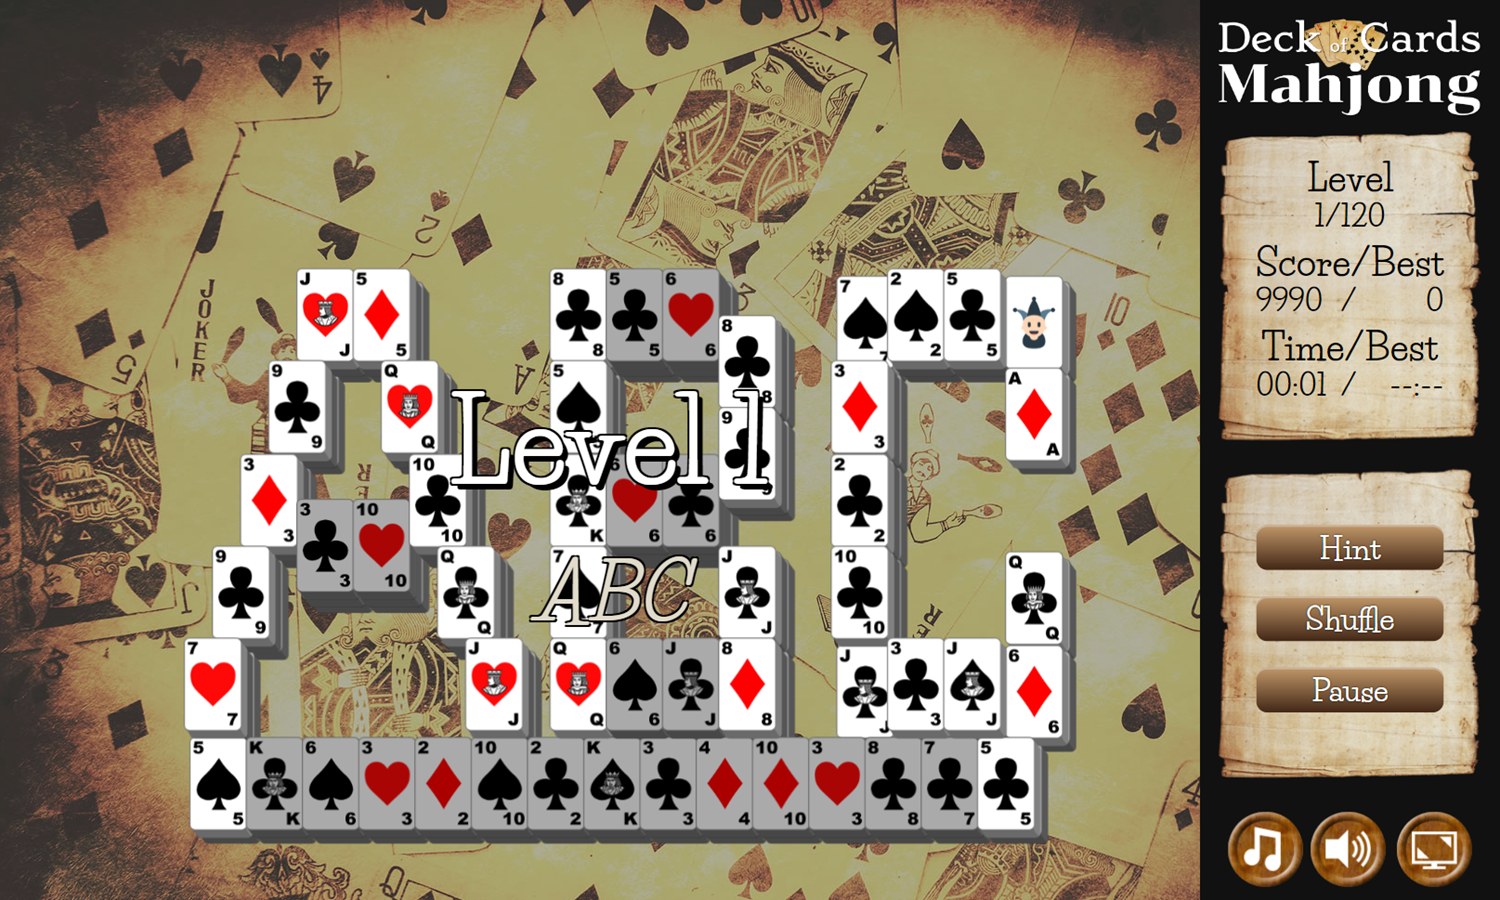 Deck of Cards Mahjong Game Level Start Screenshot.